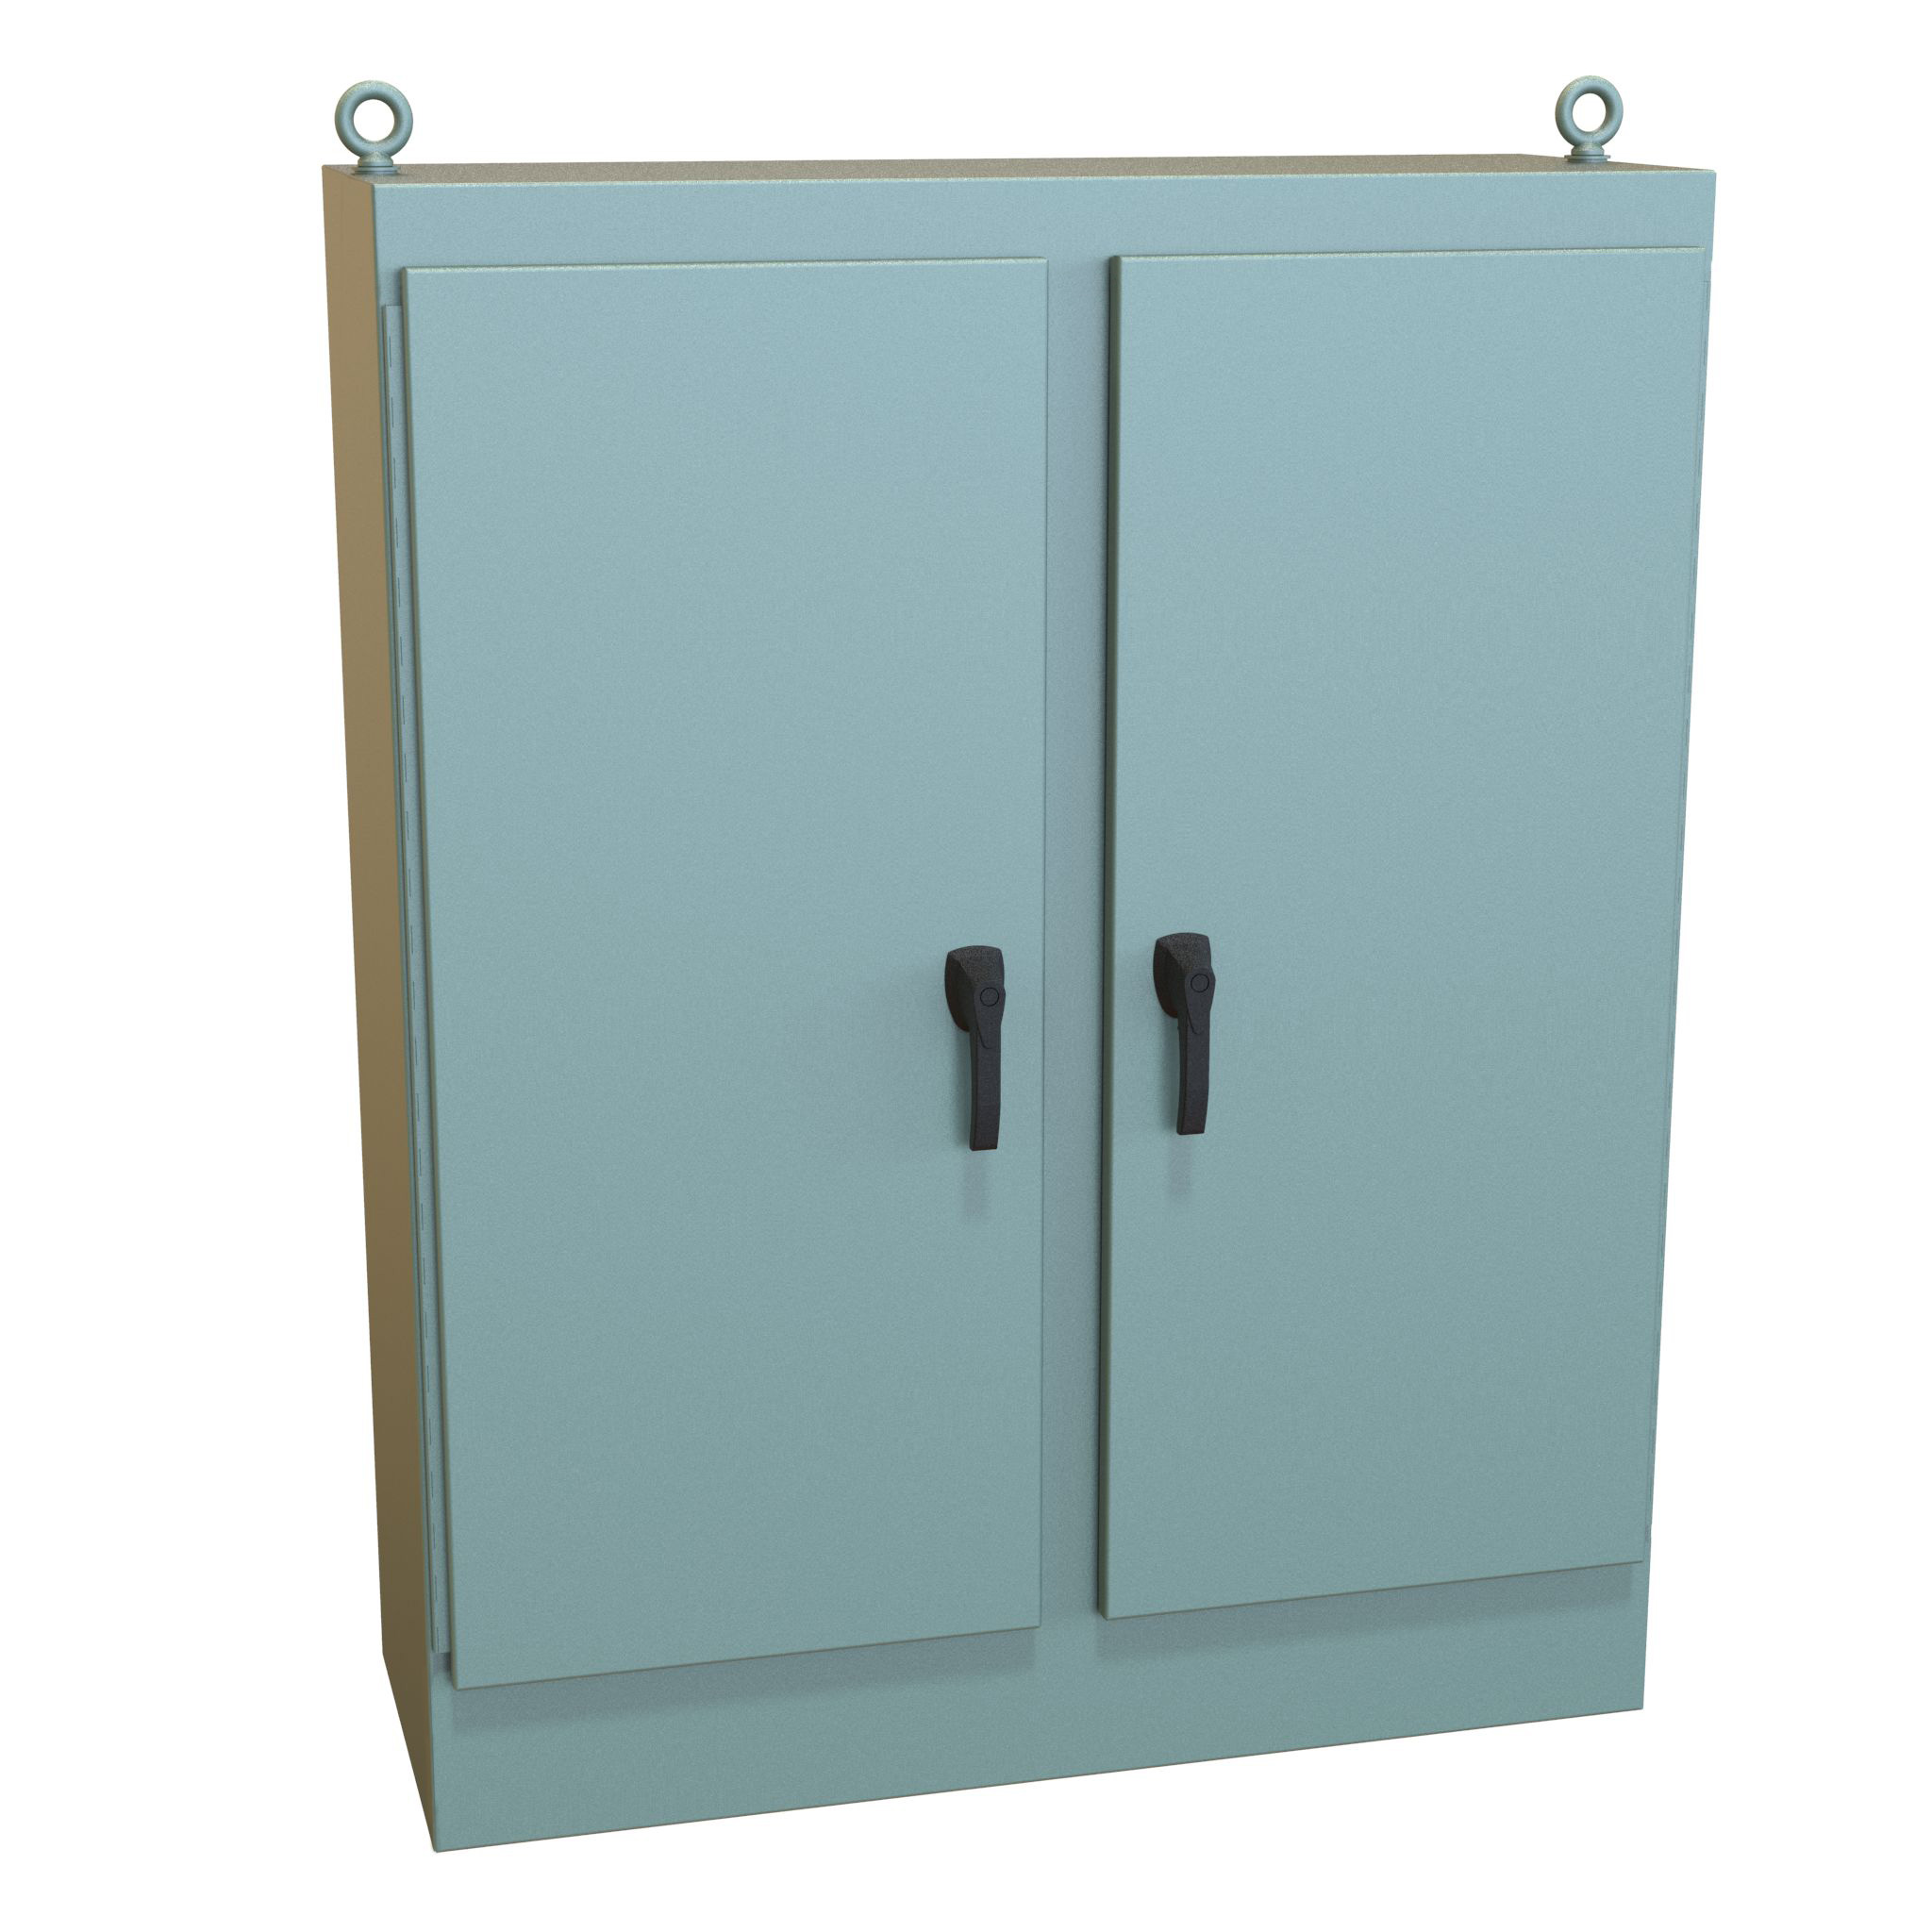 Type 4 Two Door Freestanding Enclosure HN4 FSTD Series